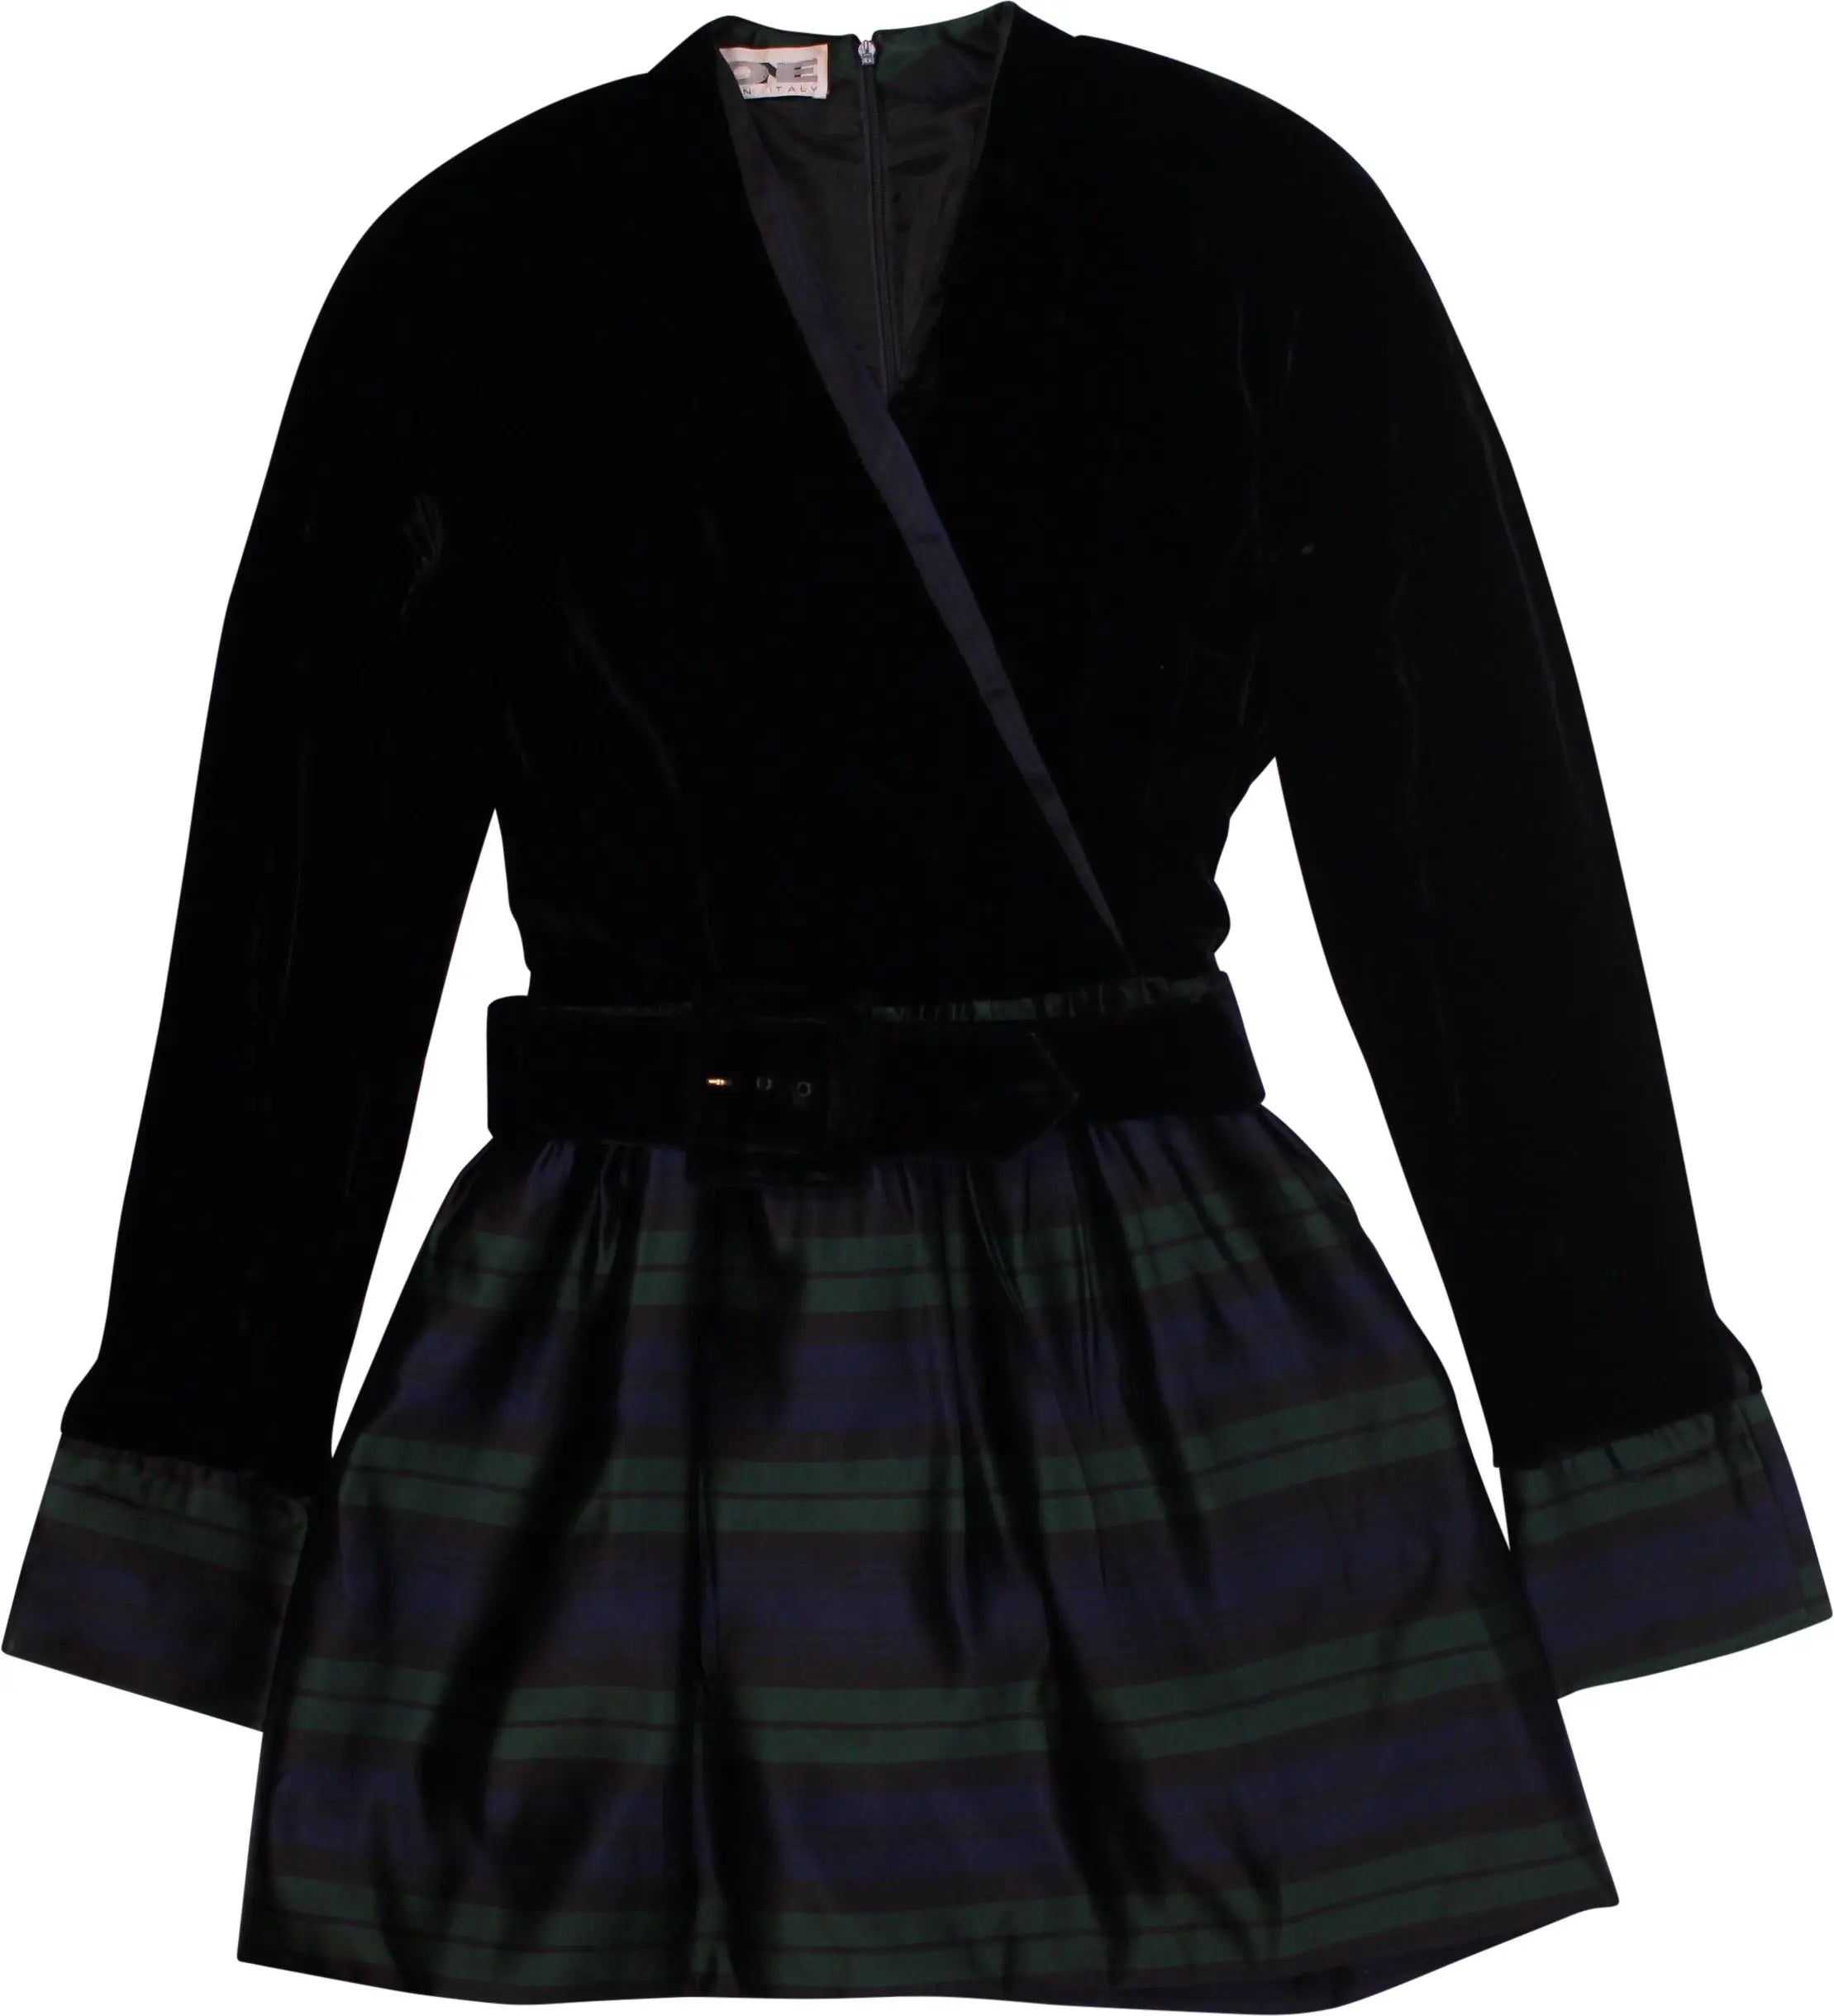 Leone - Velvet Belted Dress- ThriftTale.com - Vintage and second handclothing